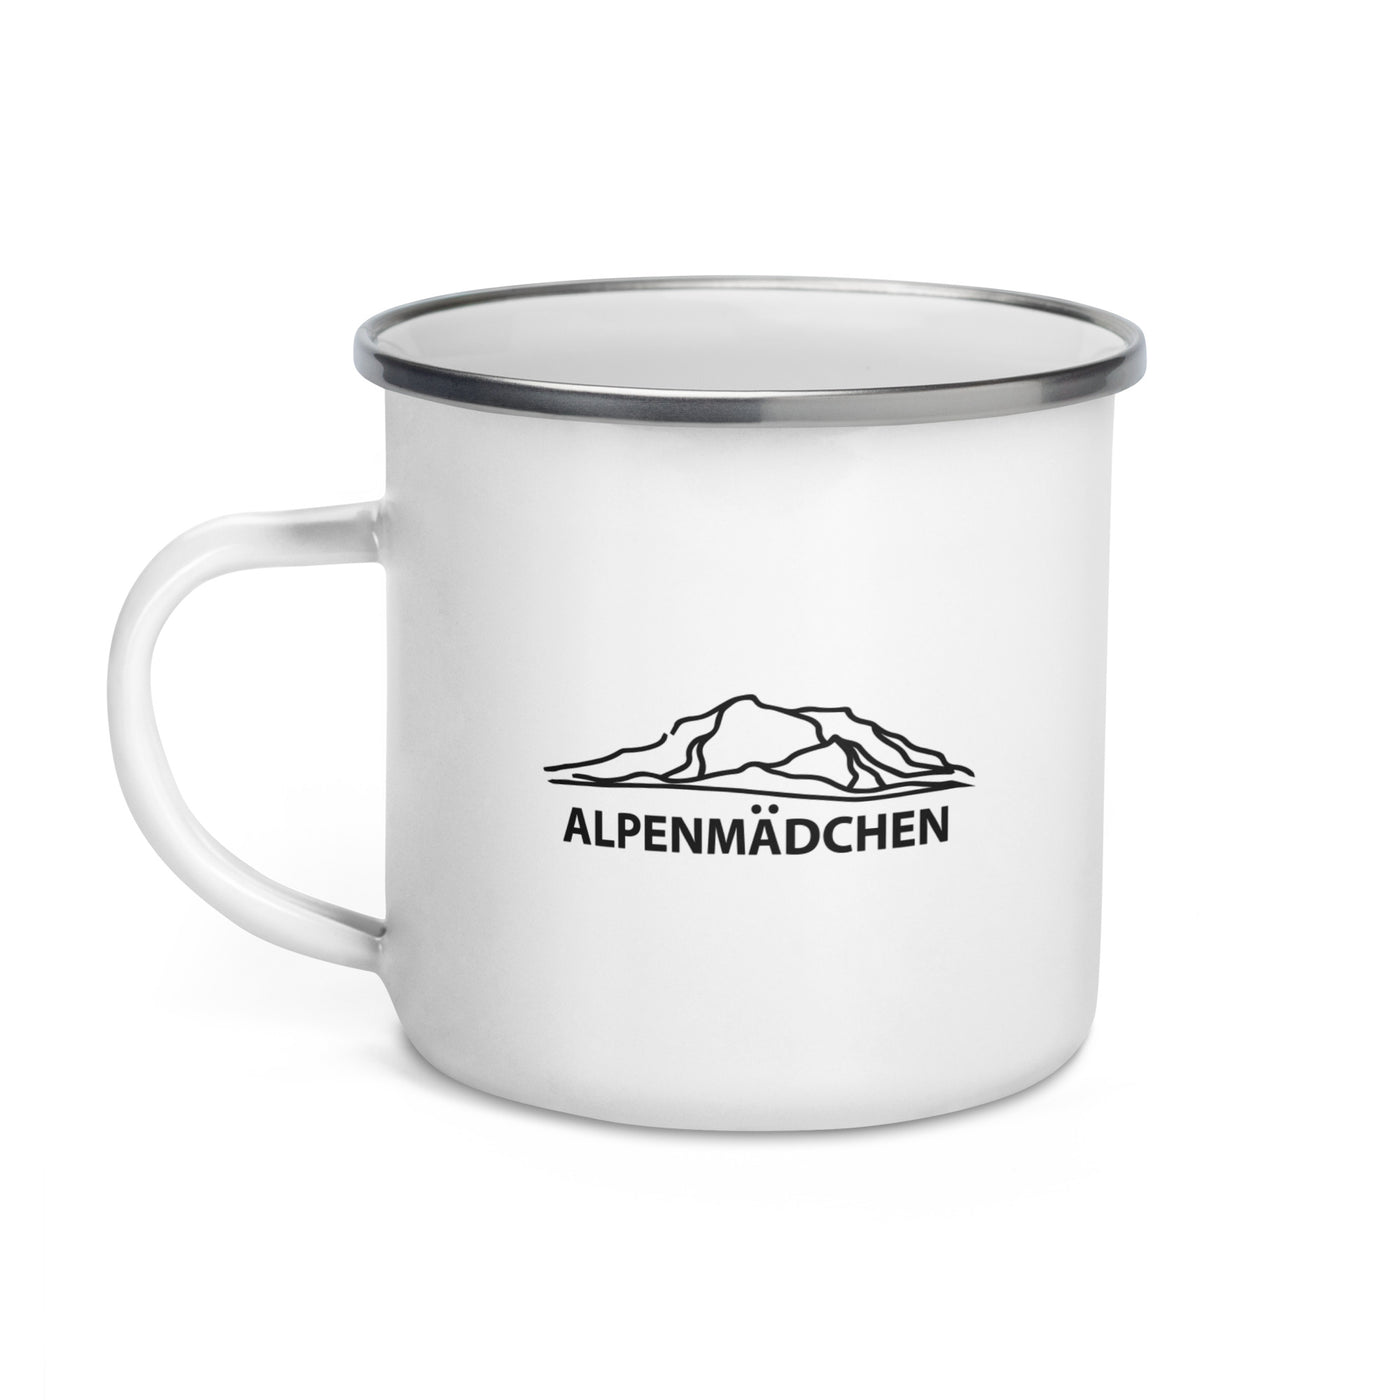 Alpenmadchen (9) - Emaille Tasse berge